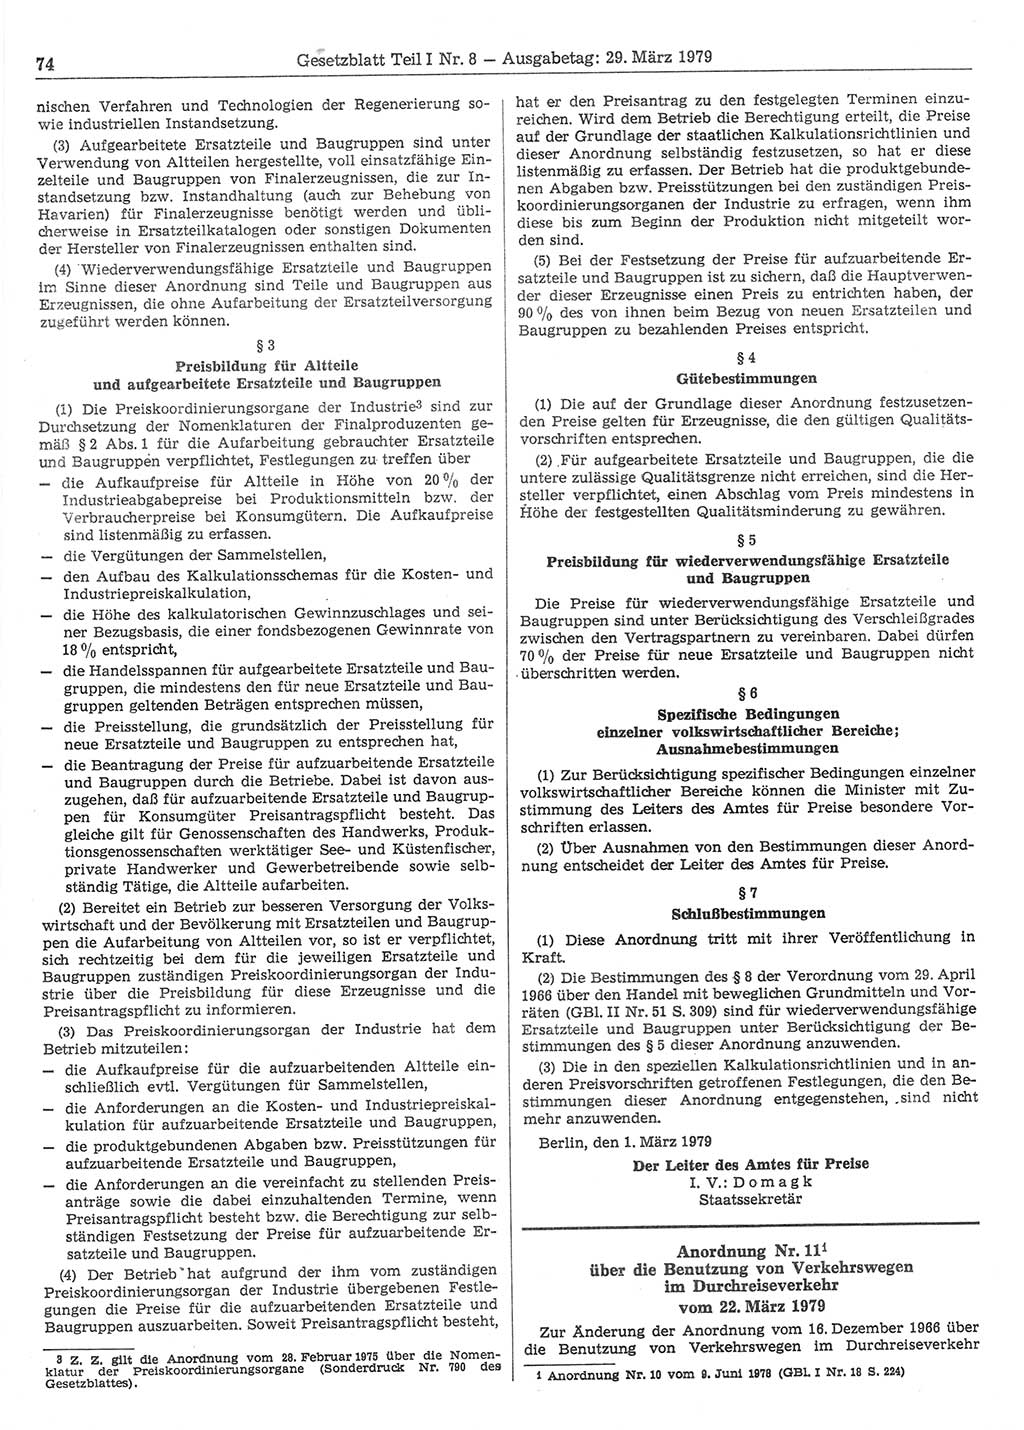 Gesetzblatt (GBl.) der Deutschen Demokratischen Republik (DDR) Teil Ⅰ 1979, Seite 74 (GBl. DDR Ⅰ 1979, S. 74)